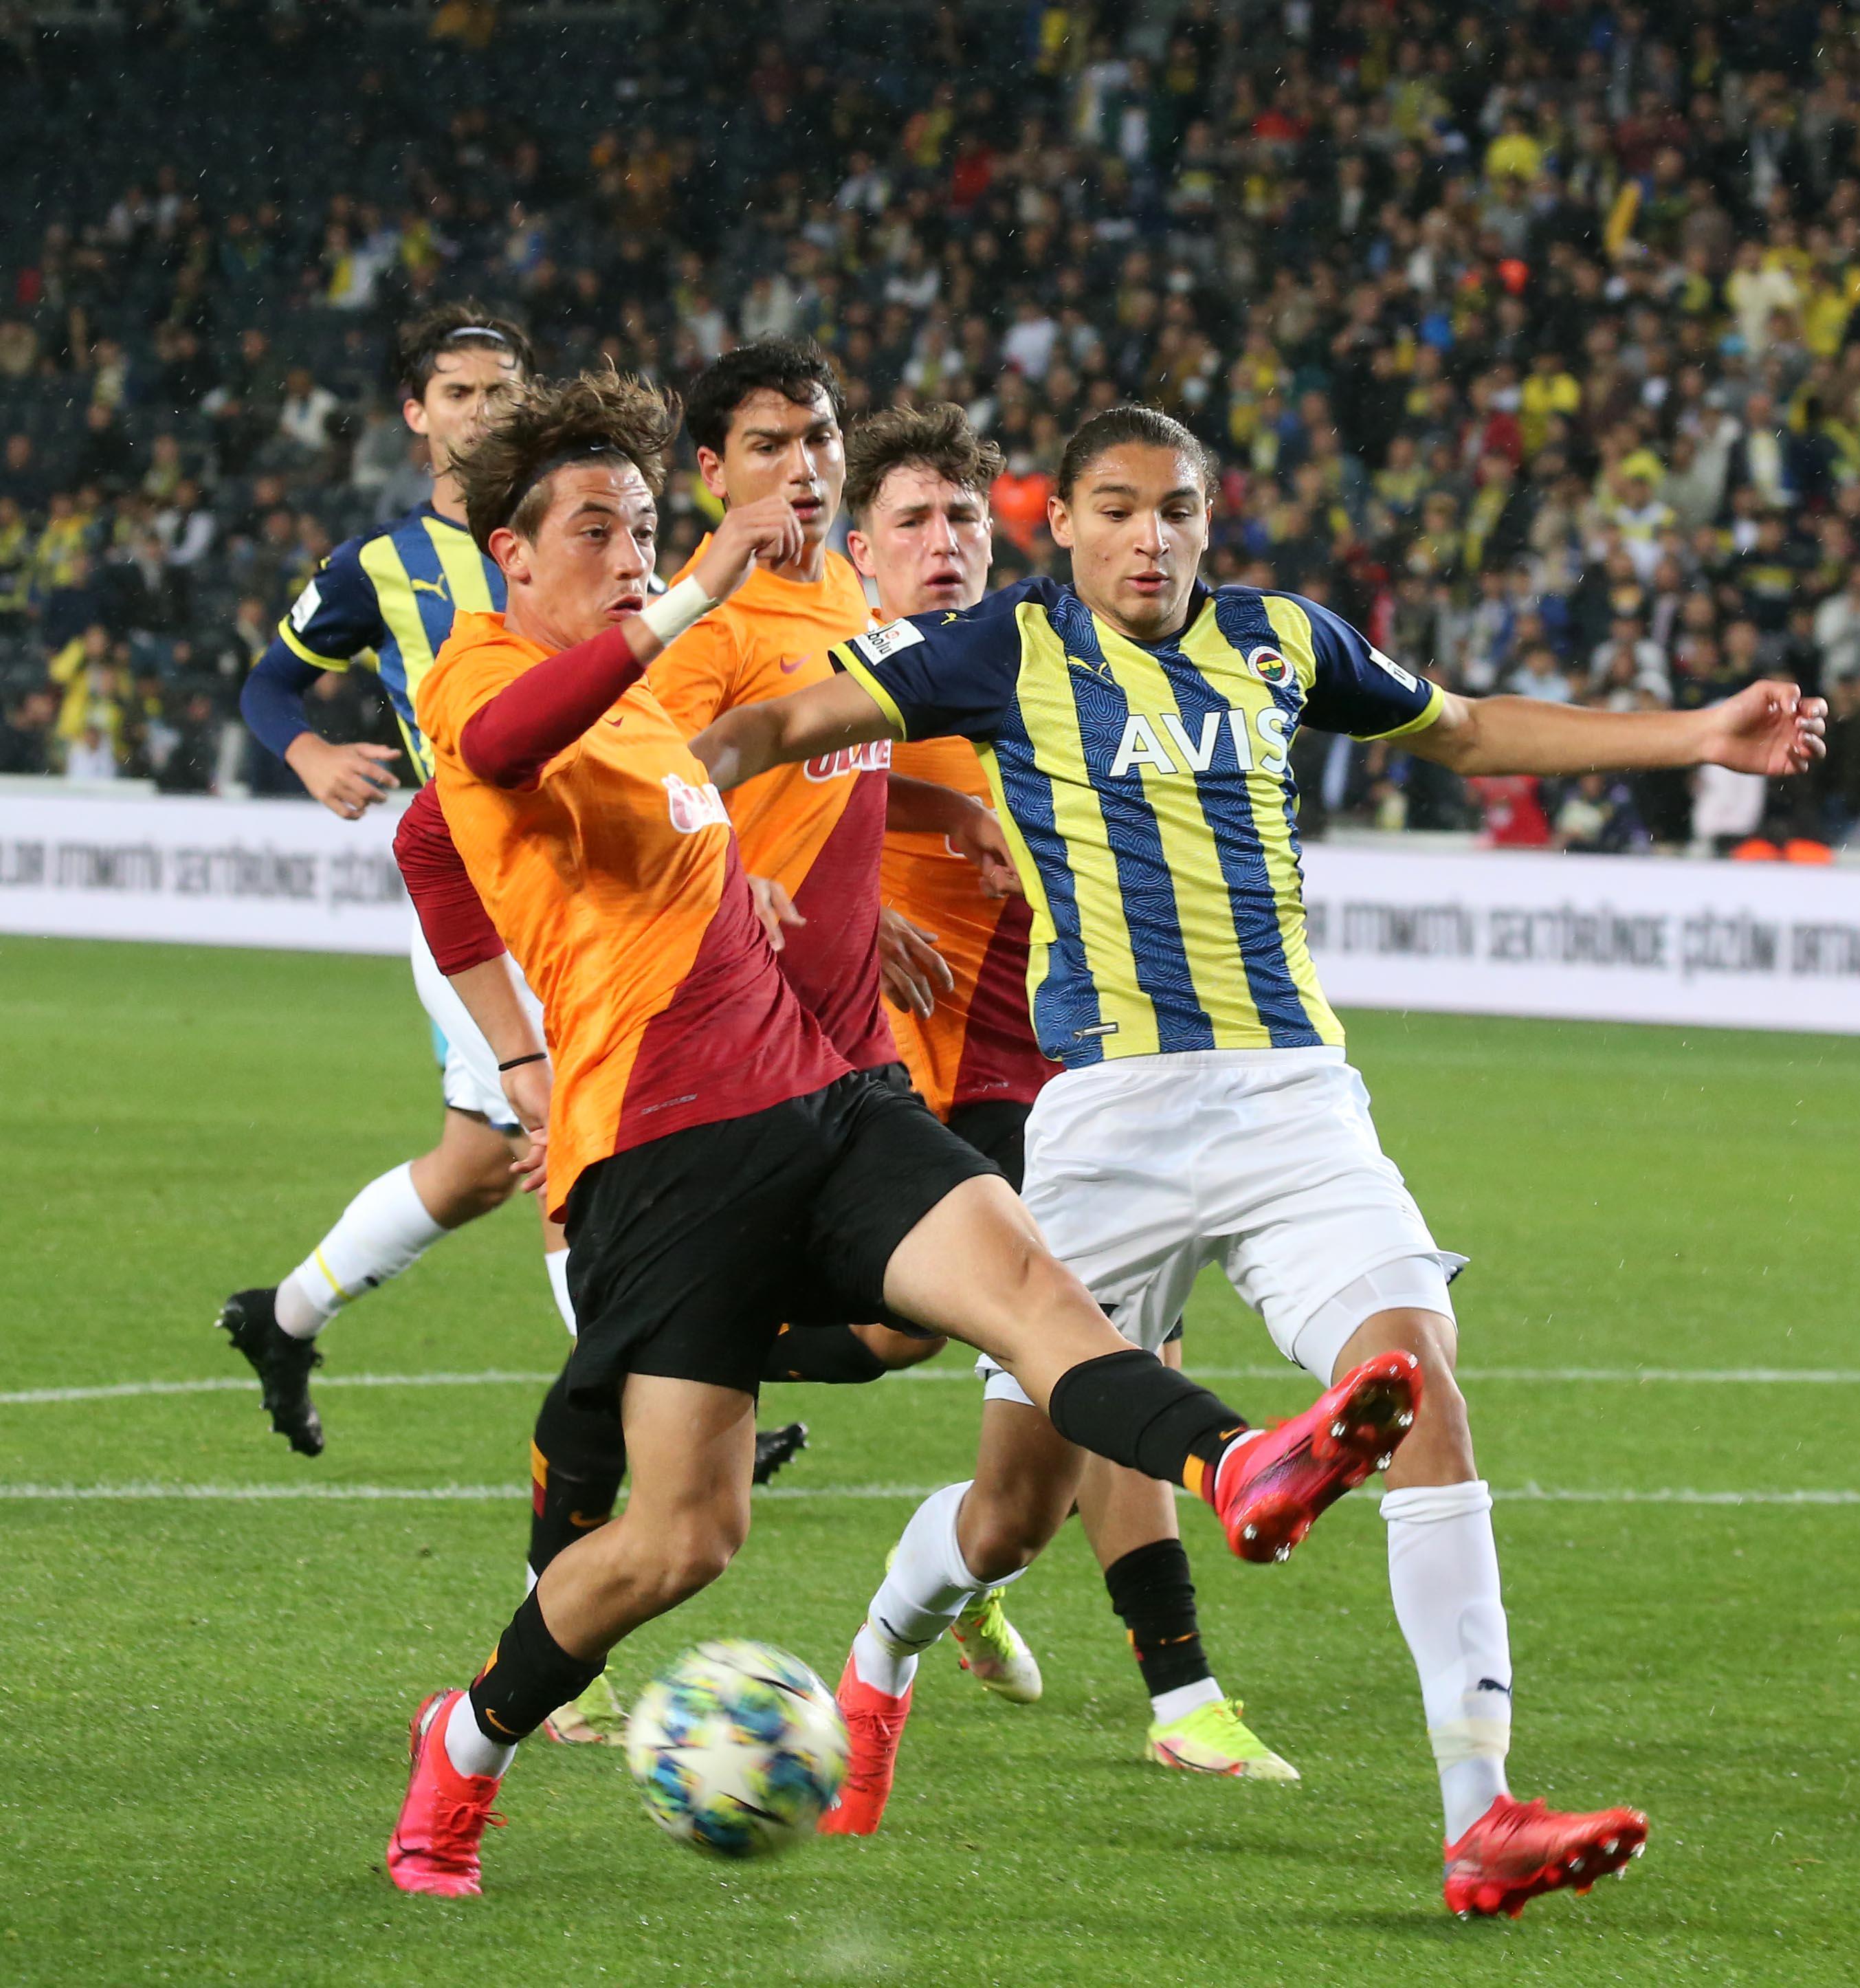 (ÖZET) Fenerbahçe U19 - Galatasaray U19 maç sonucu: 1-2